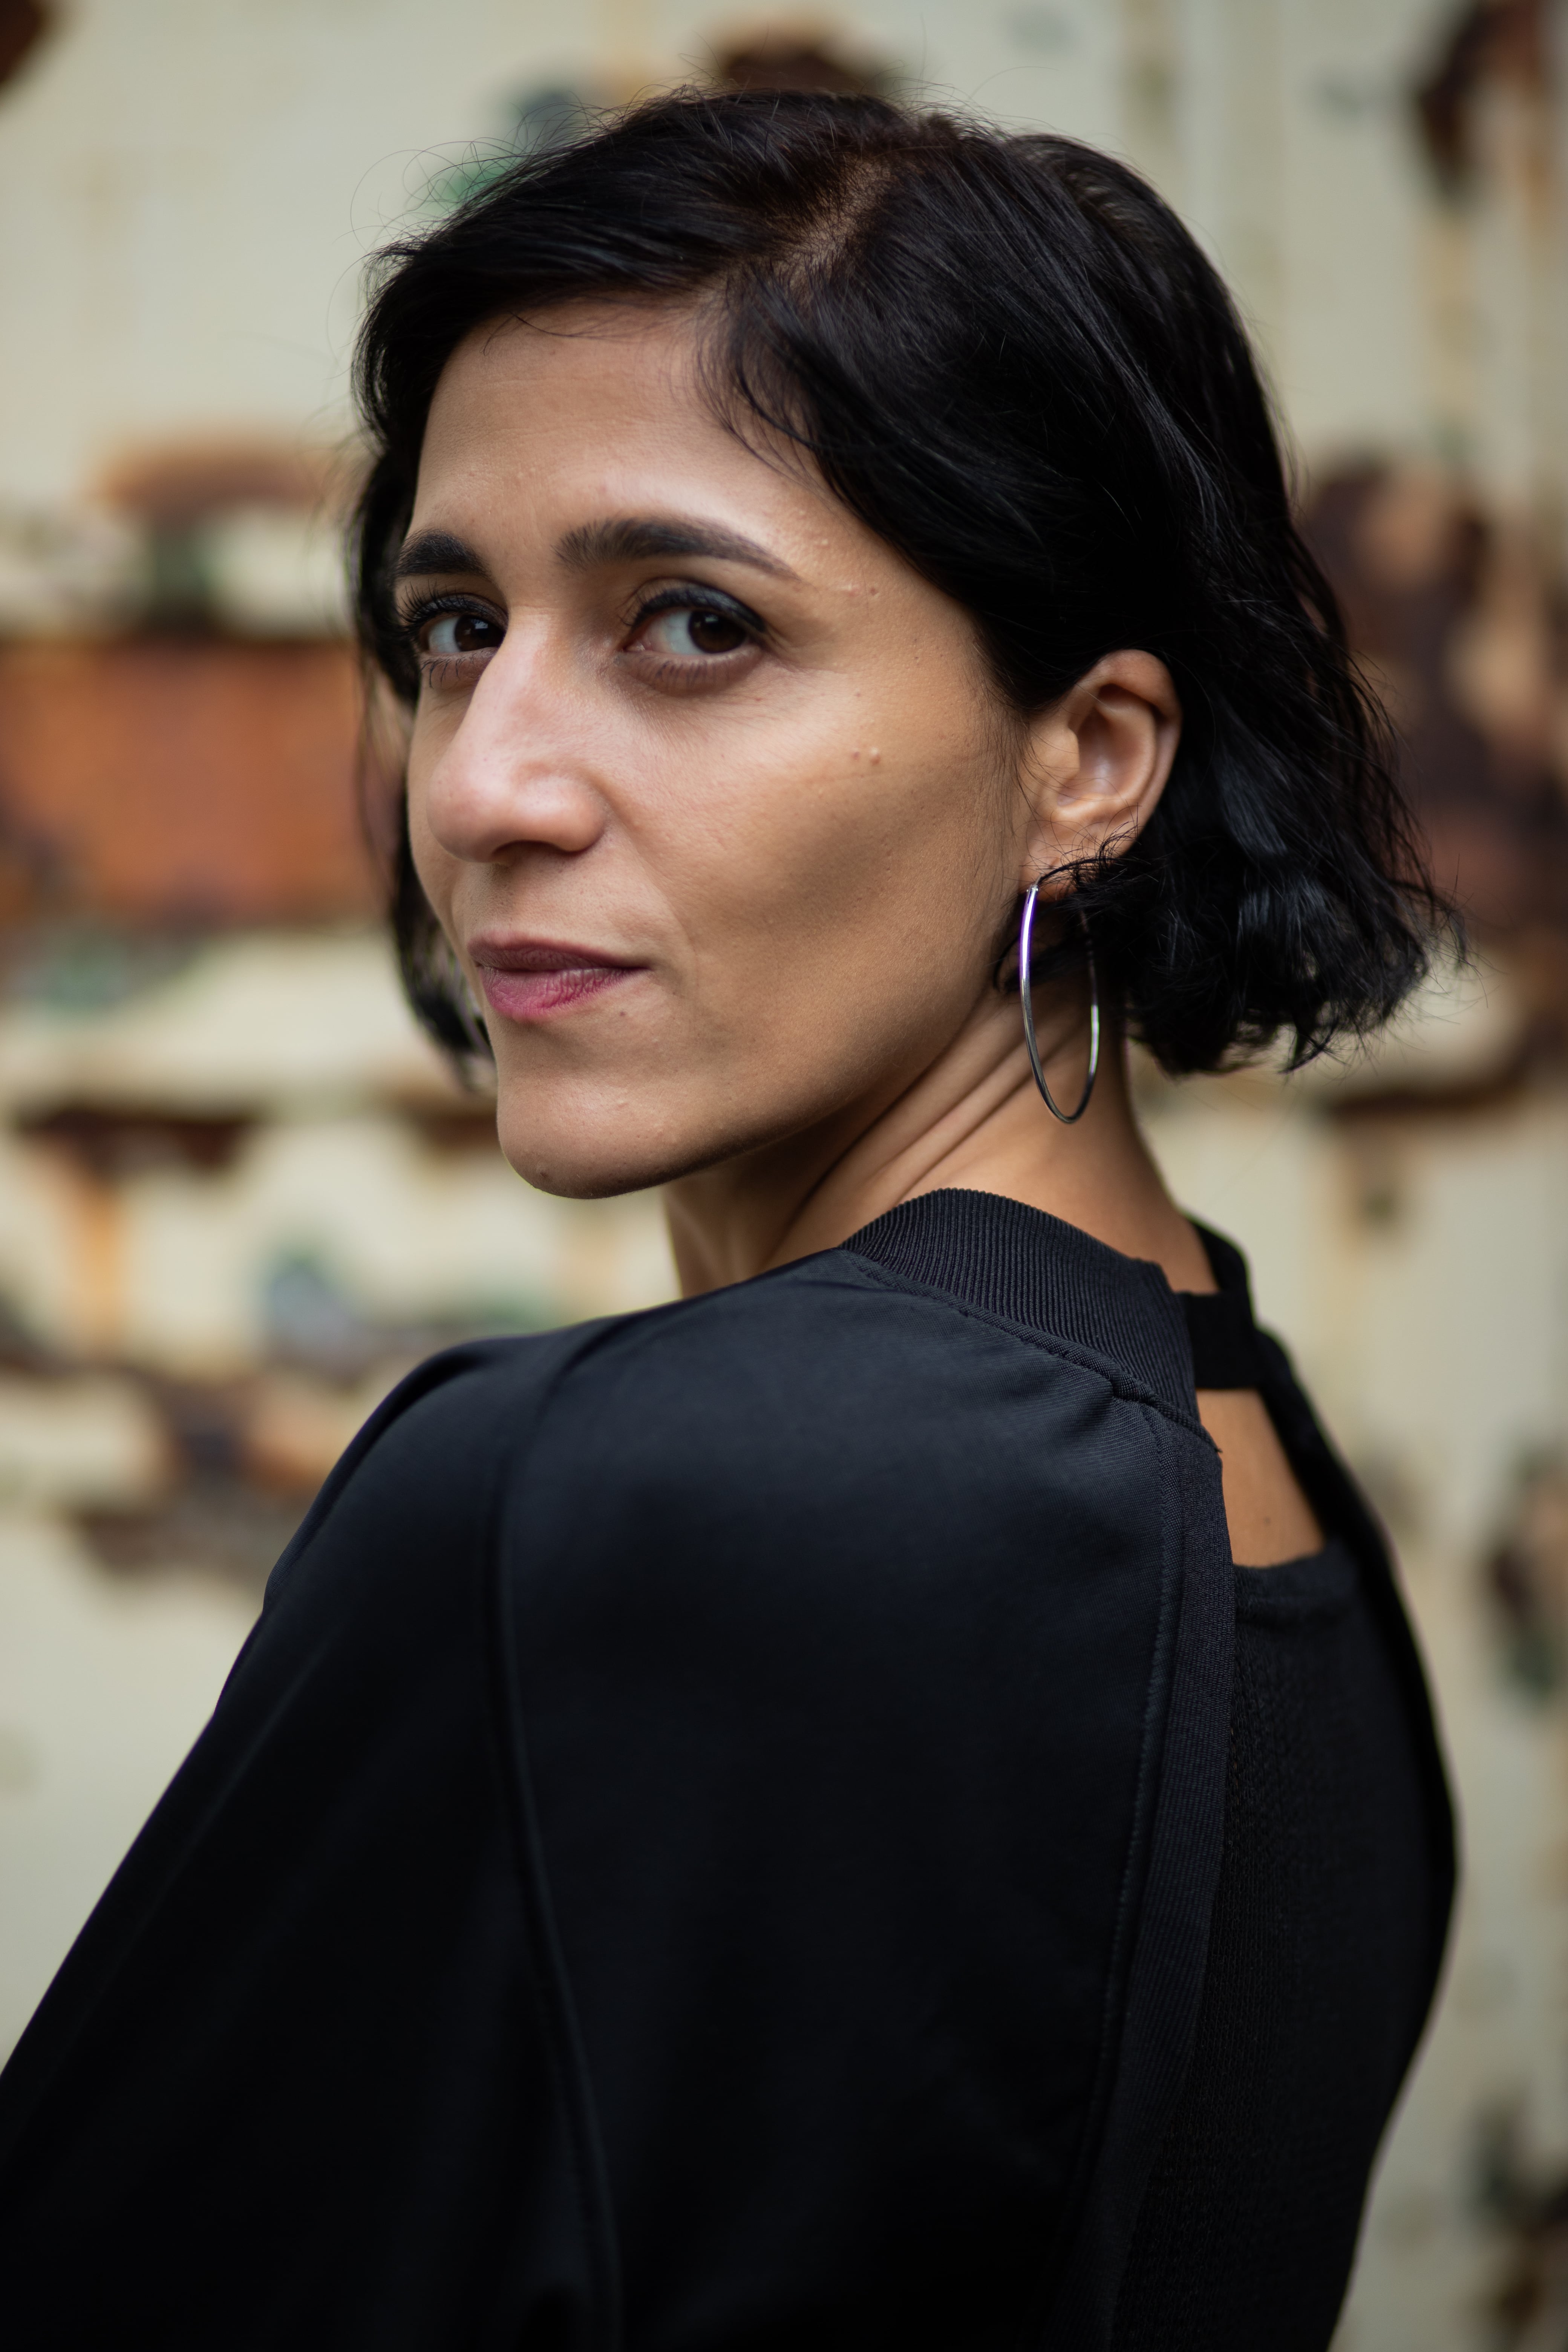 Noul Ashoka Fellow, Carmen Gheorghe, președinte al organizației E-Romja, dă putere femeilor rome